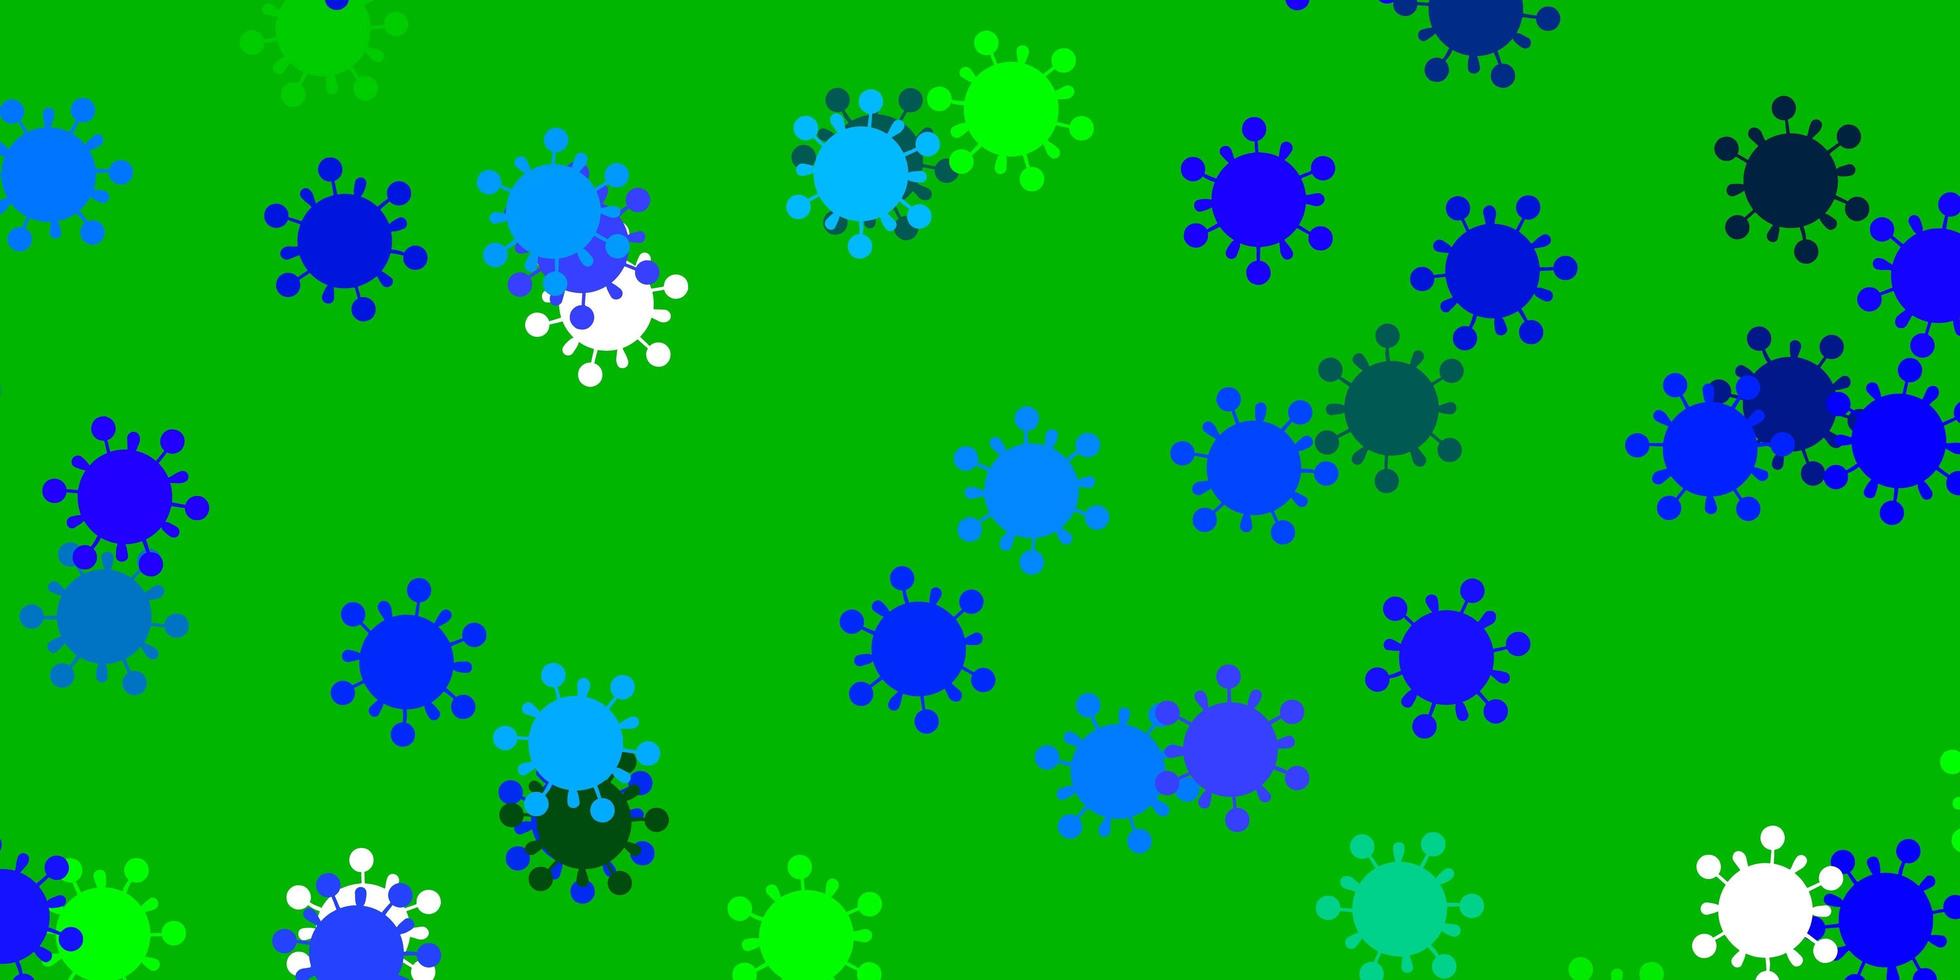 padrão de vetor azul claro e verde com elementos de coronavírus